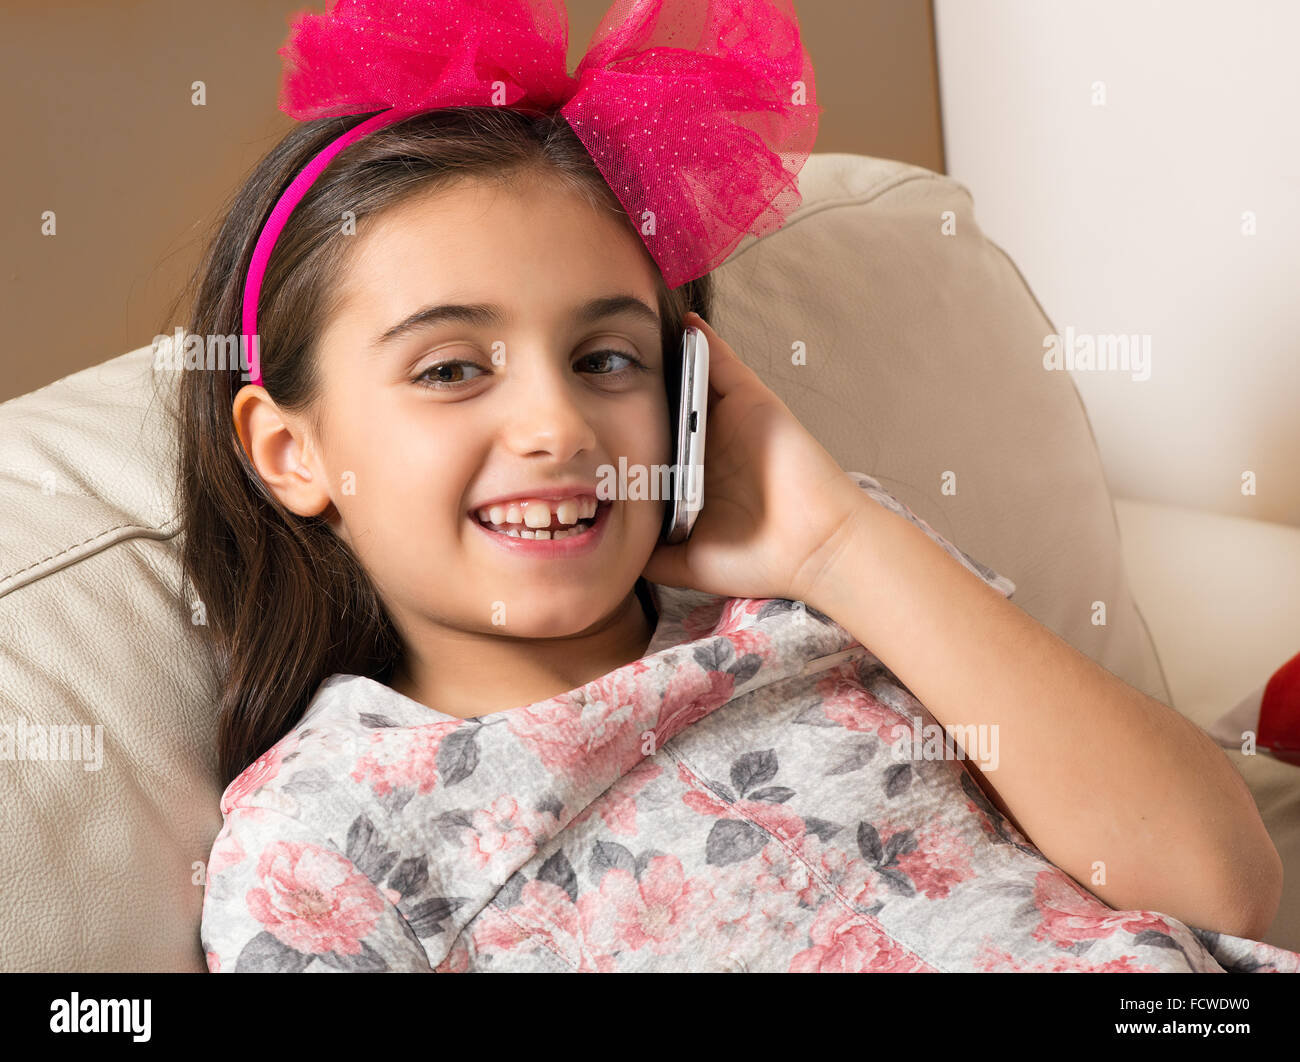 Jolie petite fille avec un joli sourire heureux et d'un noeud rose dans les cheveux de vous détendre sur un canapé chat sur son téléphone portable, Banque D'Images